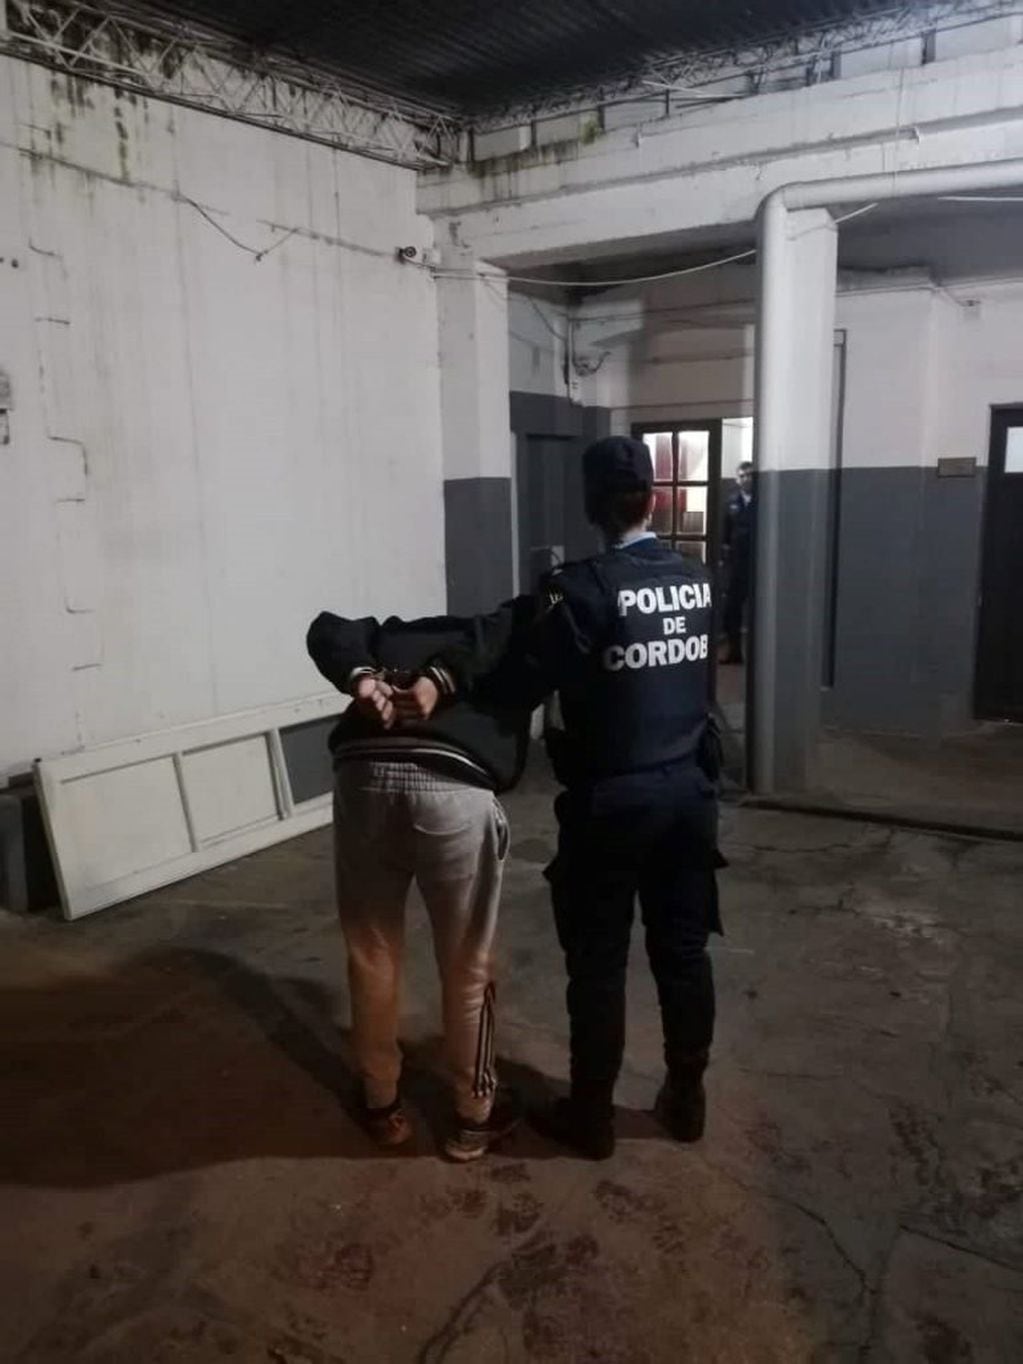 Uno de los dos detenidos tras intentar robar en una vivienda de Barrio Córdoba.